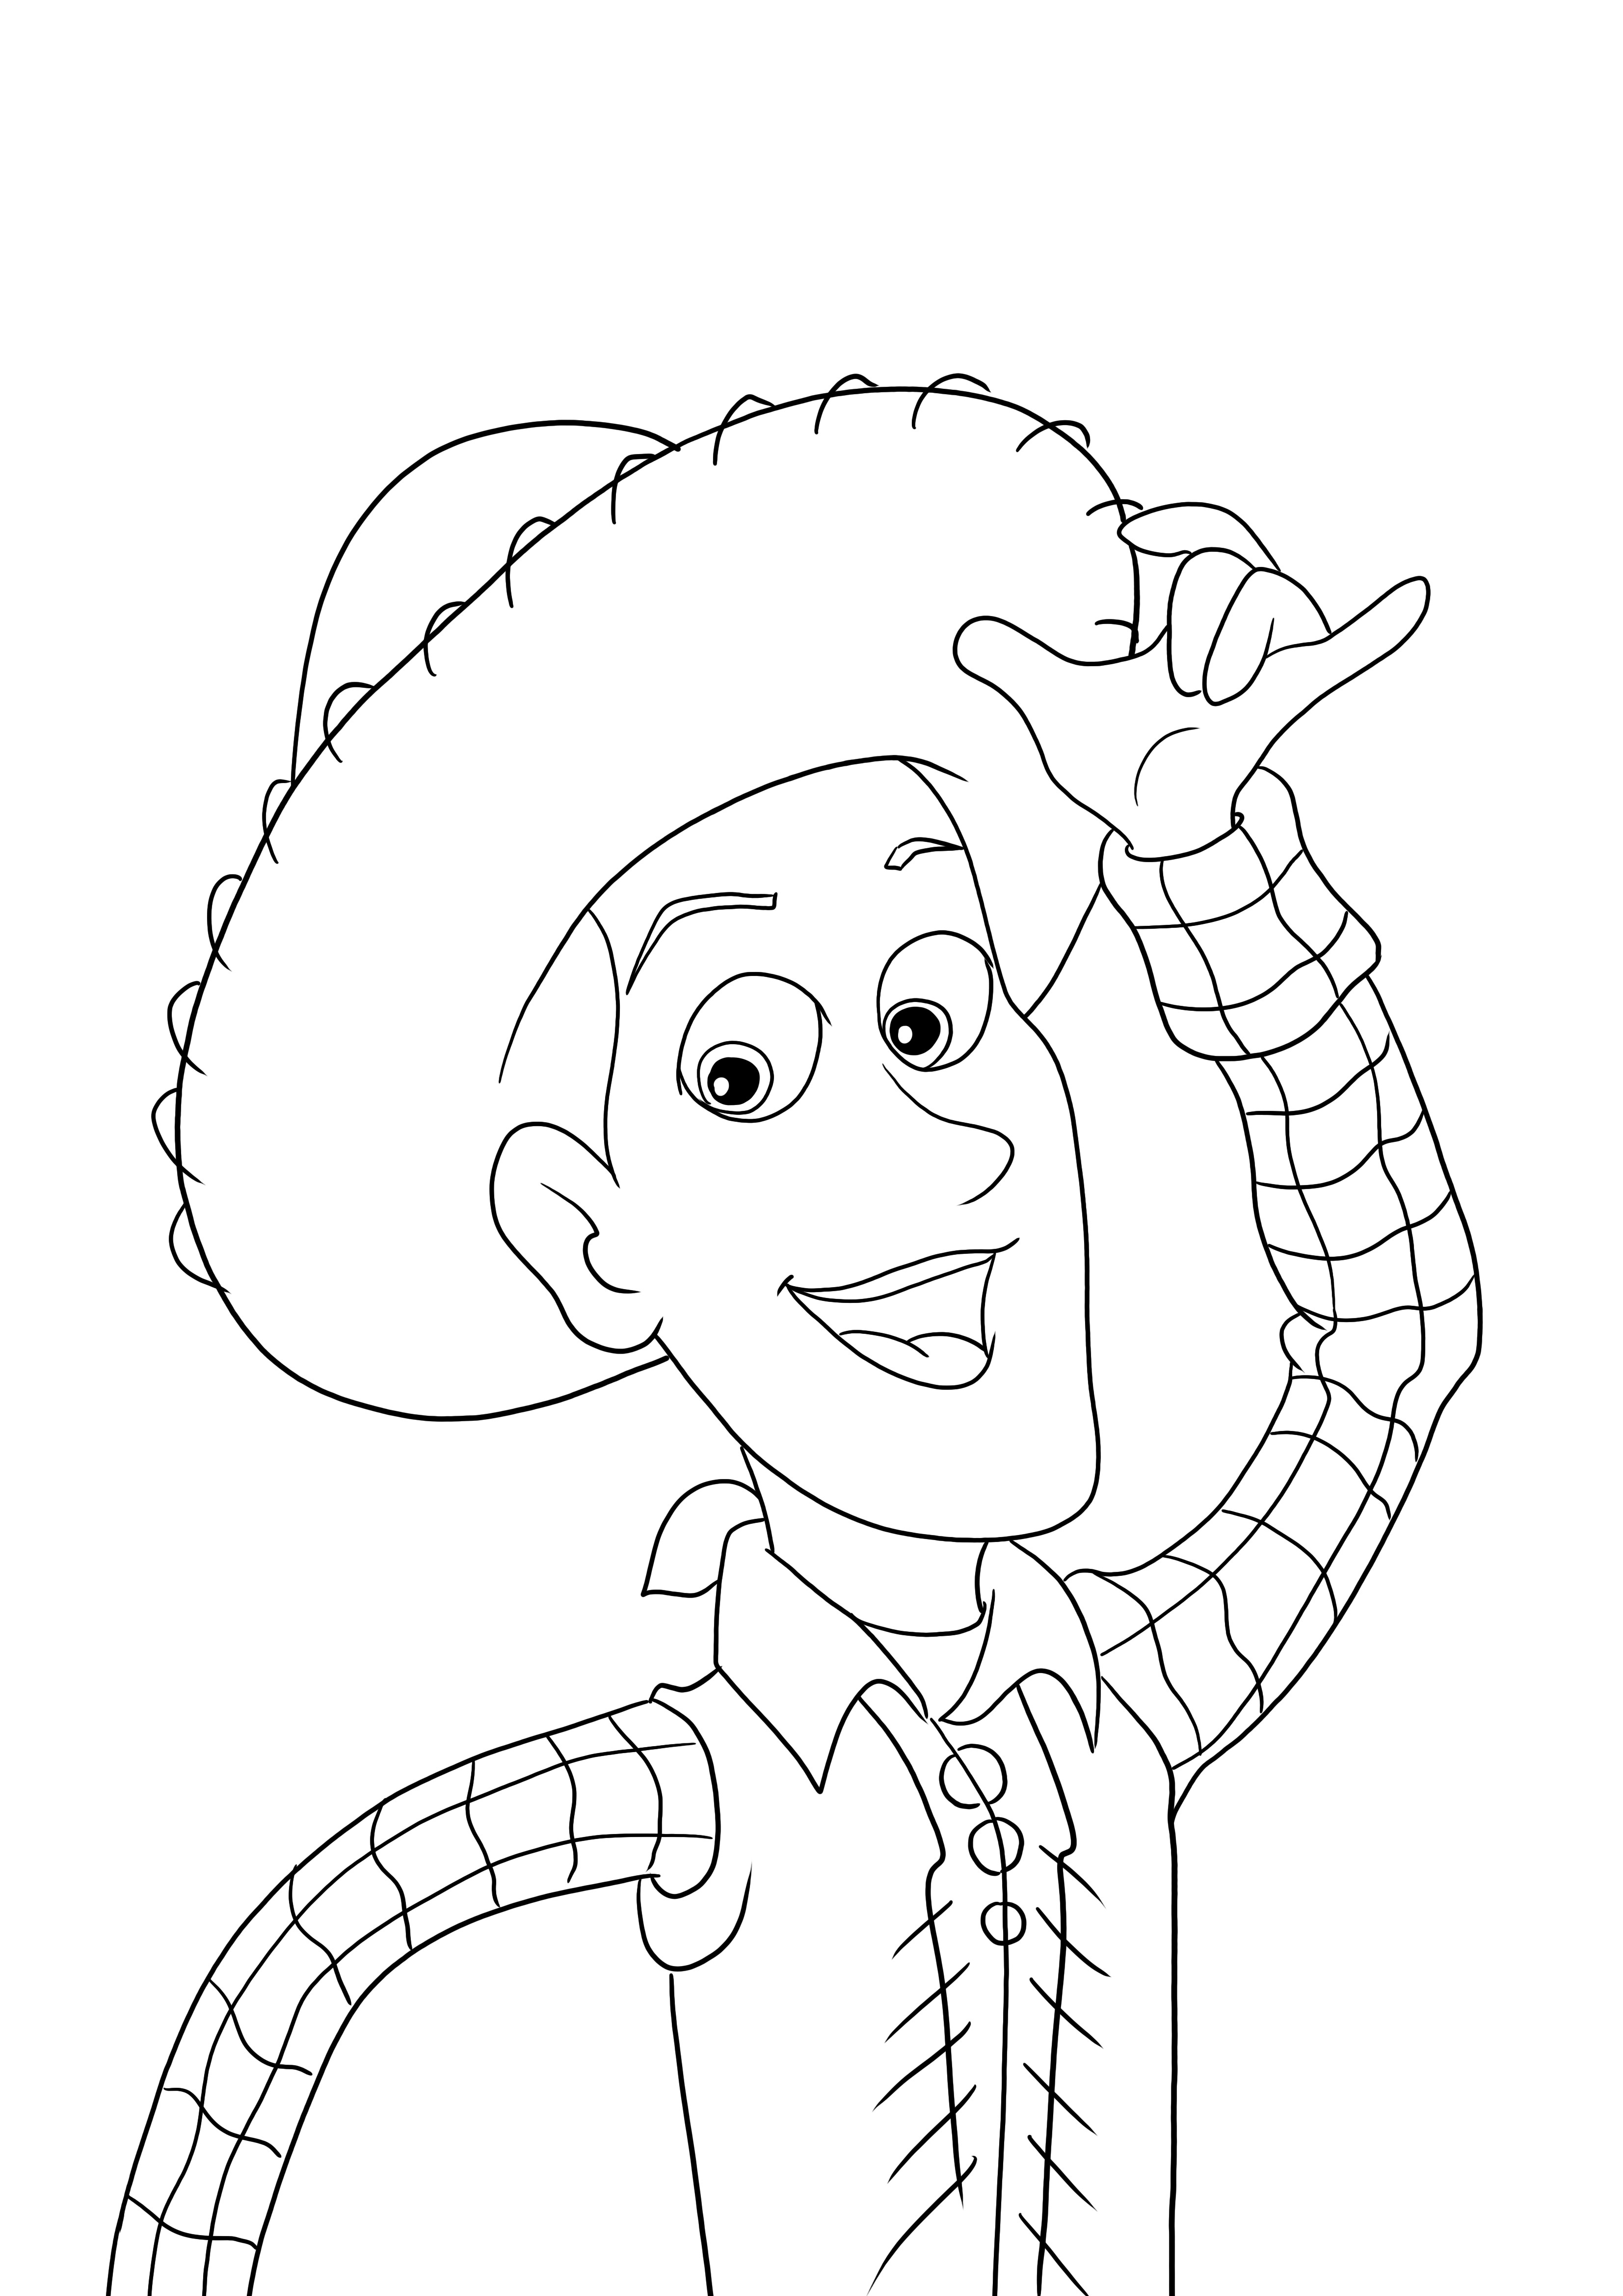 Ücretsiz ve renkli indirmek veya yazdırmak için Toy Story filminden Woody karakteri